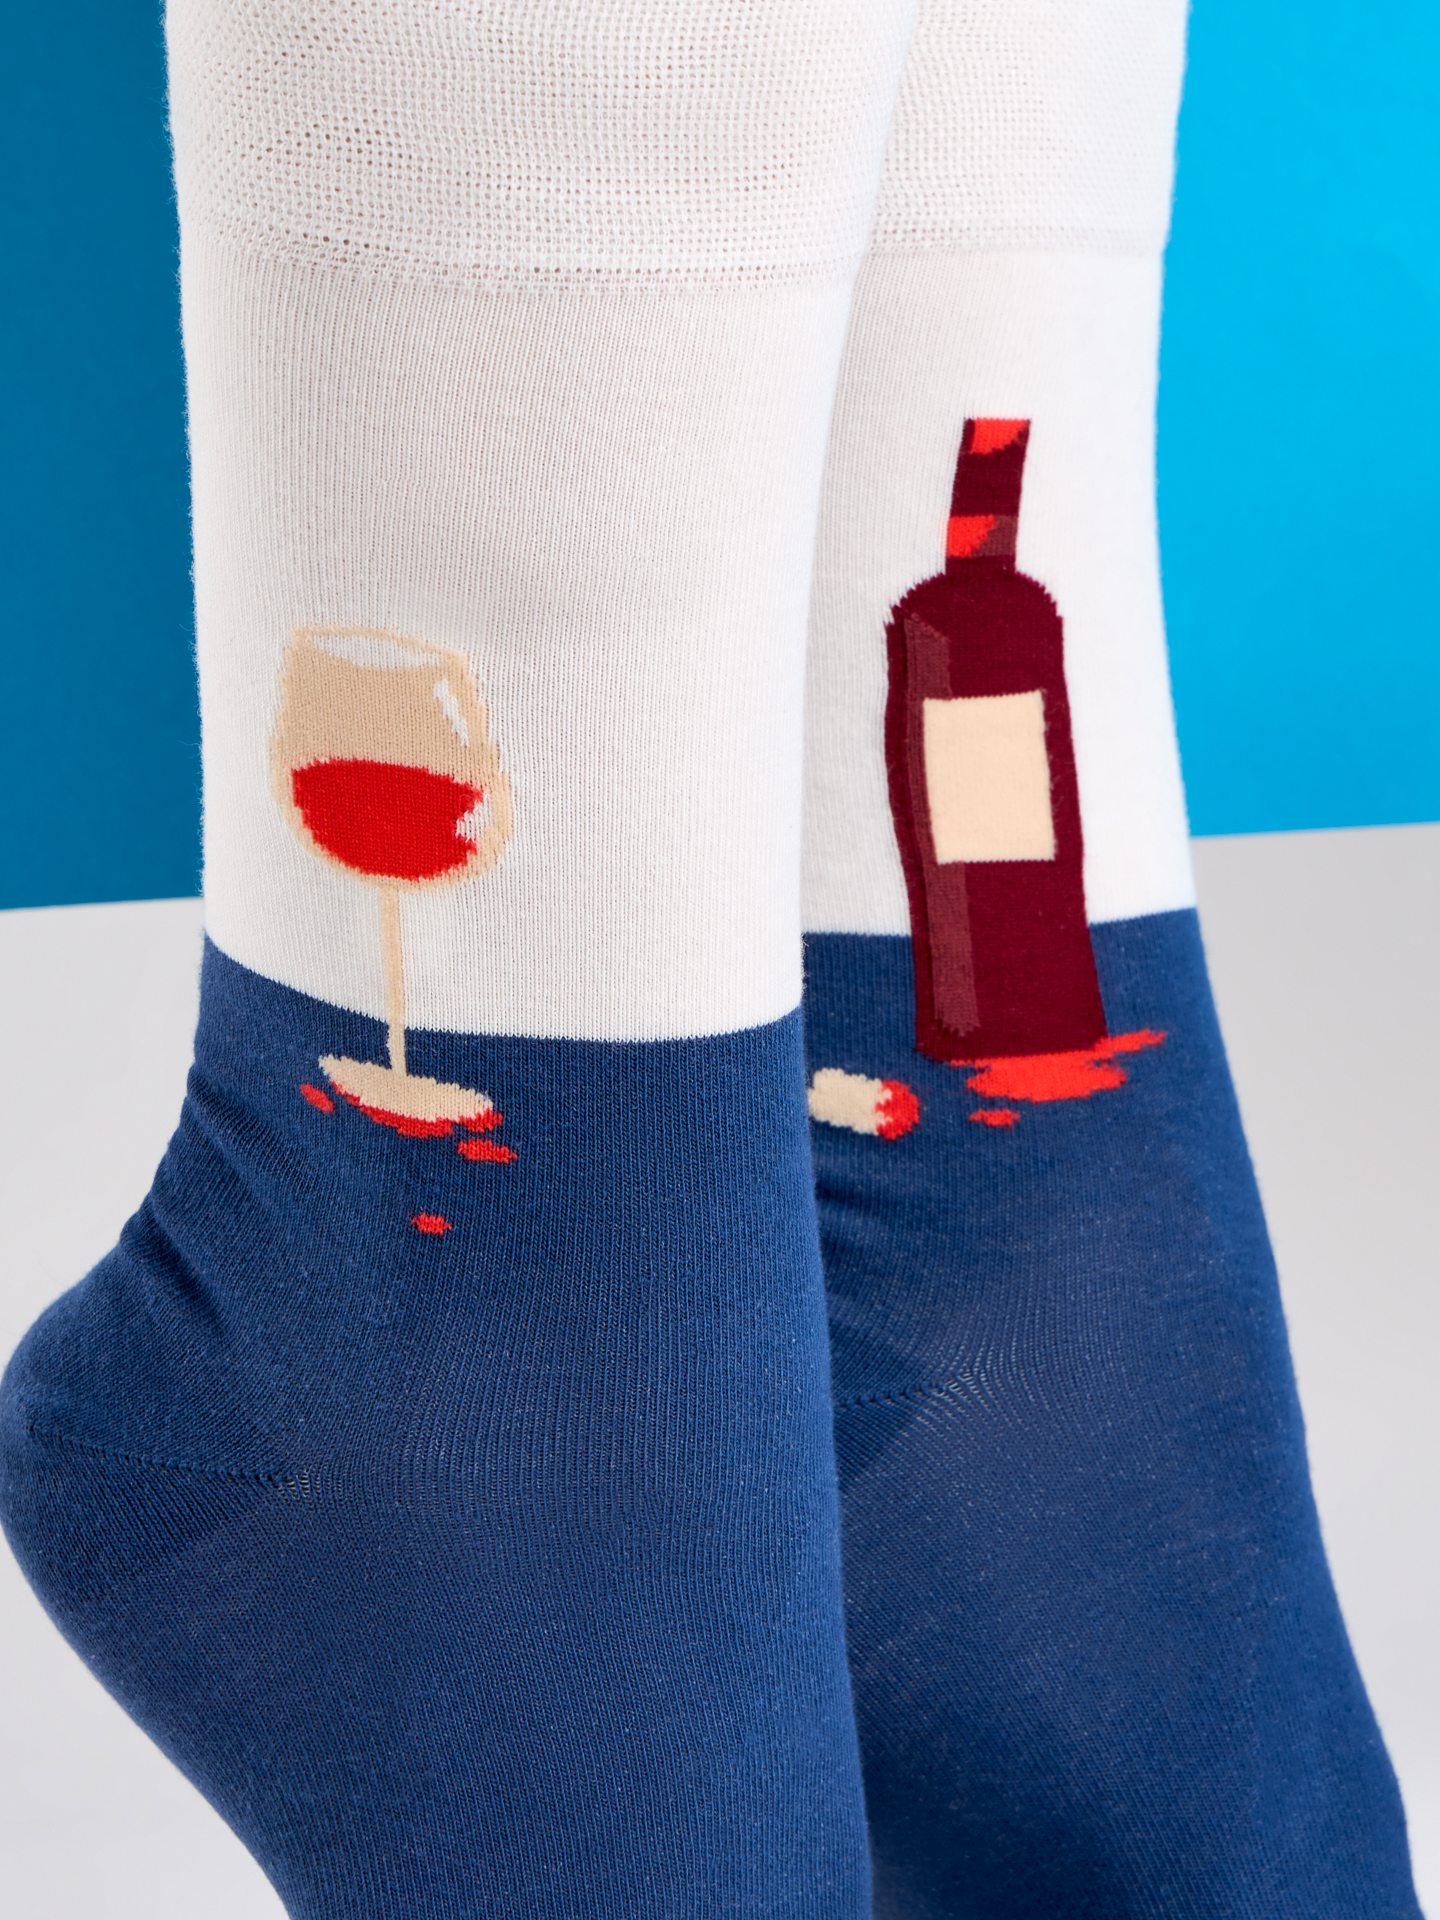 Regular Socks Bottle of Wine